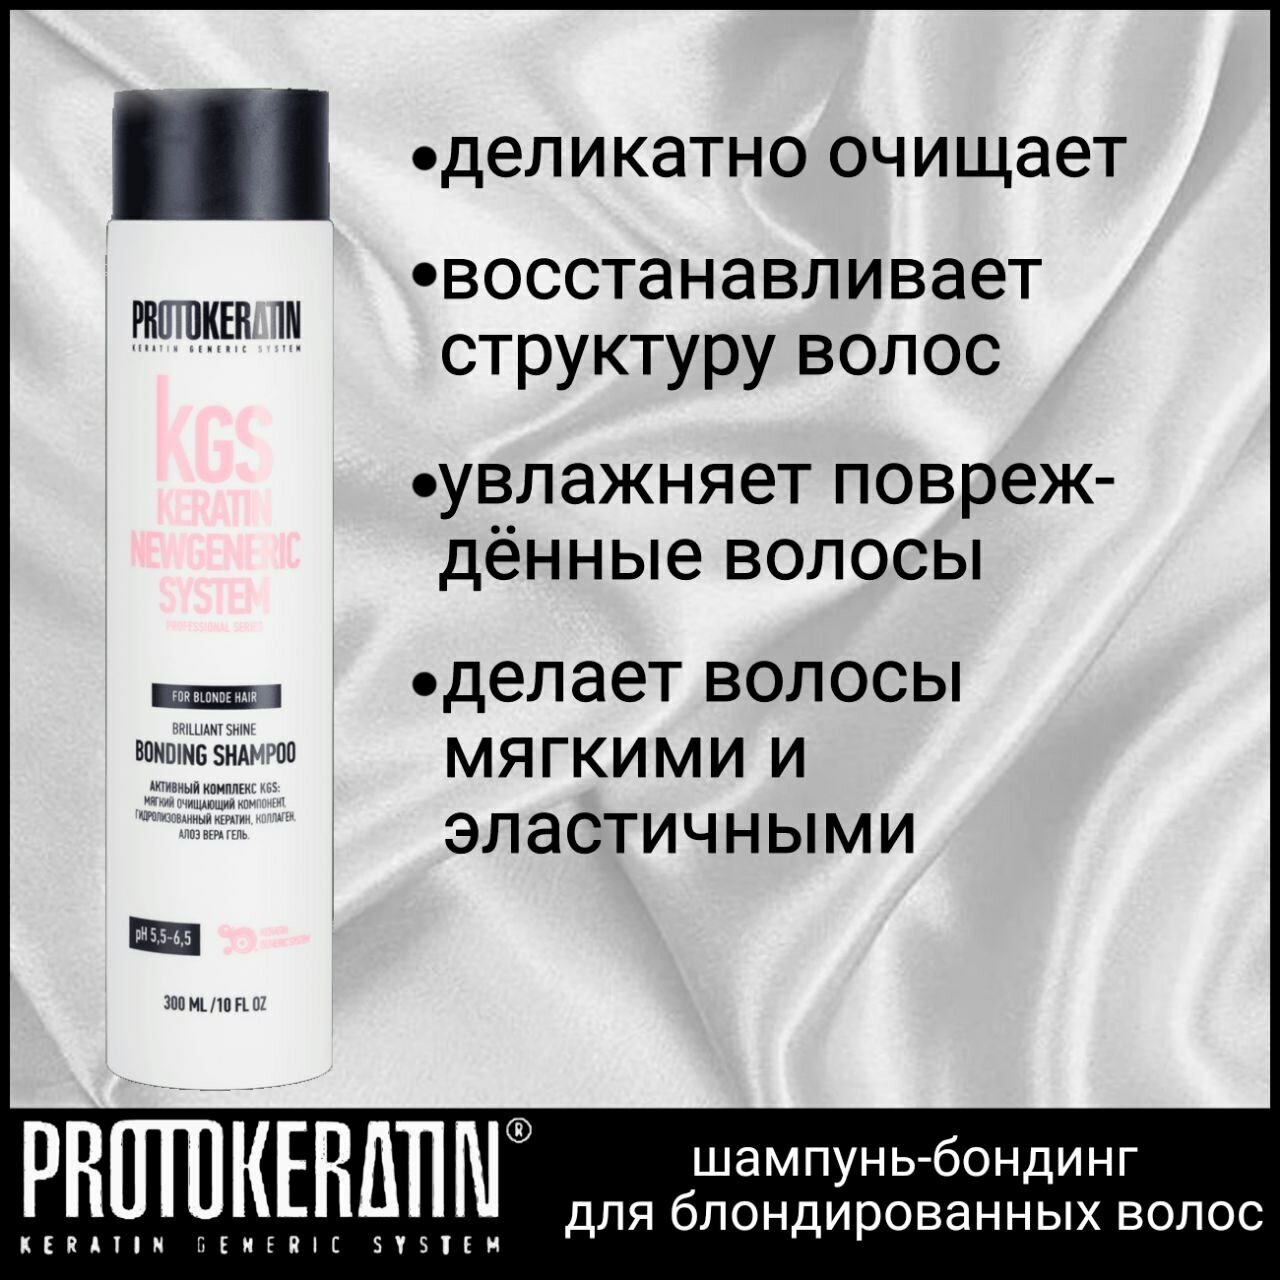 Профессиональный шампунь-бондинг, для блондированных волос, PROTOKERATIN (pH 5,5-6.5)